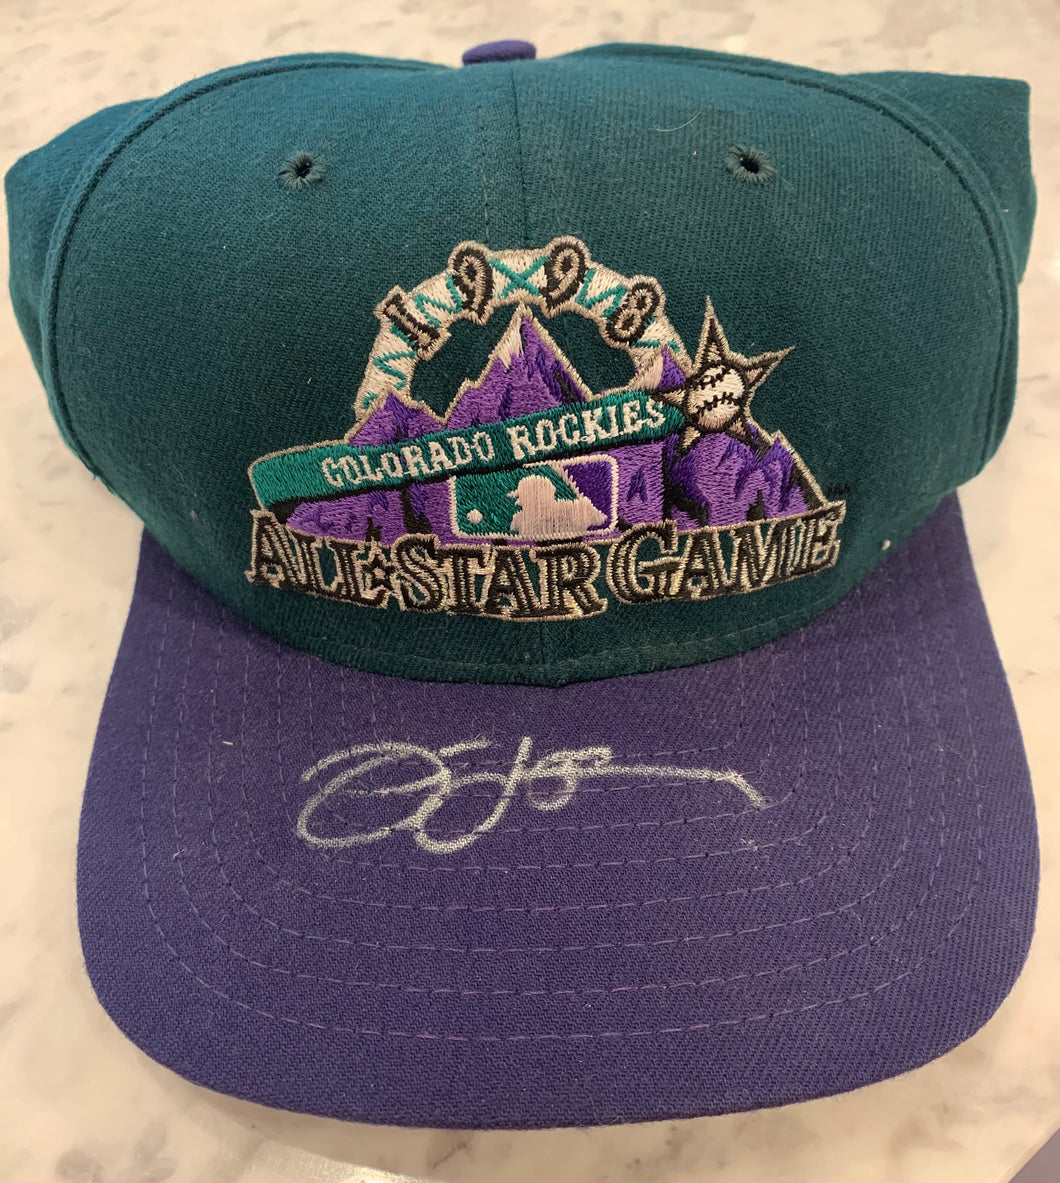 Jim Leyland Autographed Hat